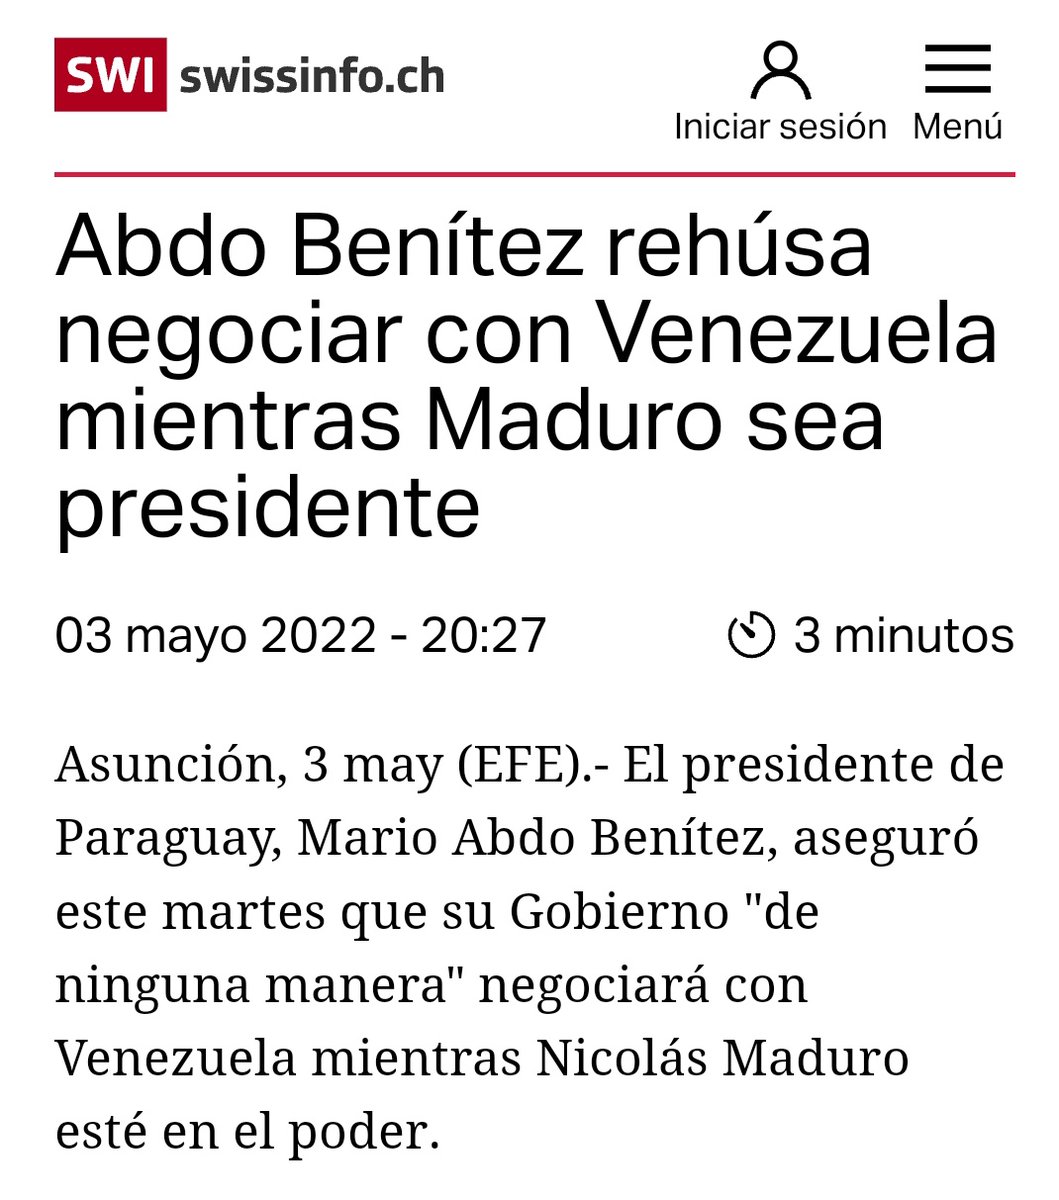 Mario Abdo Benítez, pdte. paraguayo que reconoció a Guaidó solo para que le condonara deuda de $300MM, que apoyó intento de invasión a VZLA por Cúcuta, que rehuyó al debate con @NicolasMaduro en VI Celac 2021, ya es pasado. No le alcanzó ni para la reelección. Se secó, como todos